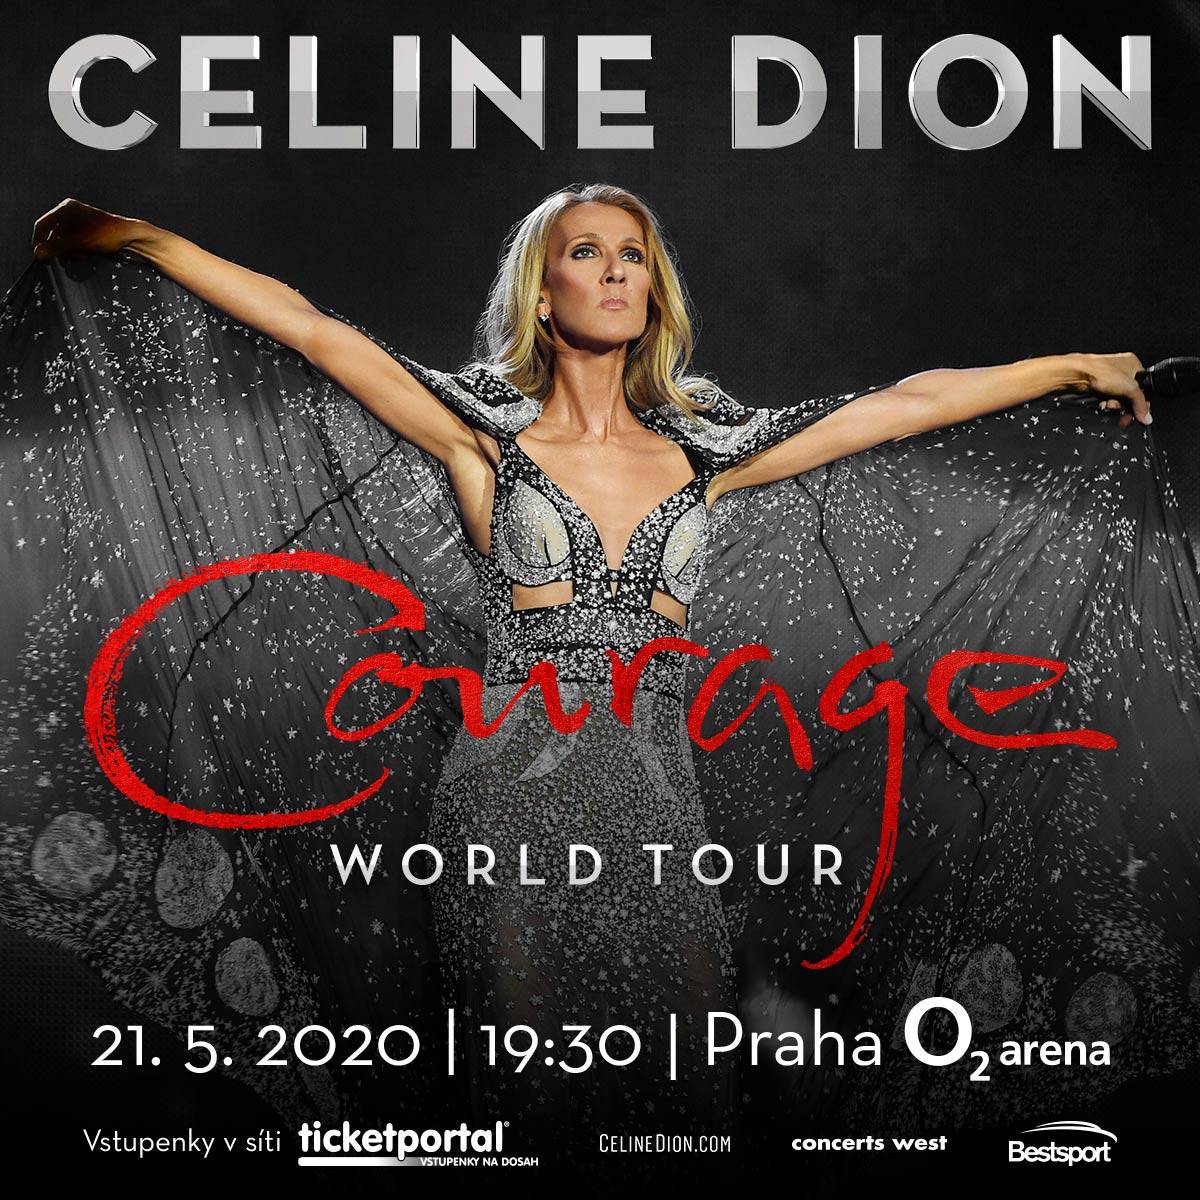 Celine Dion se po dvanácti letech vrátí do Česka. V O2 areně odstartuje turné po Evropě